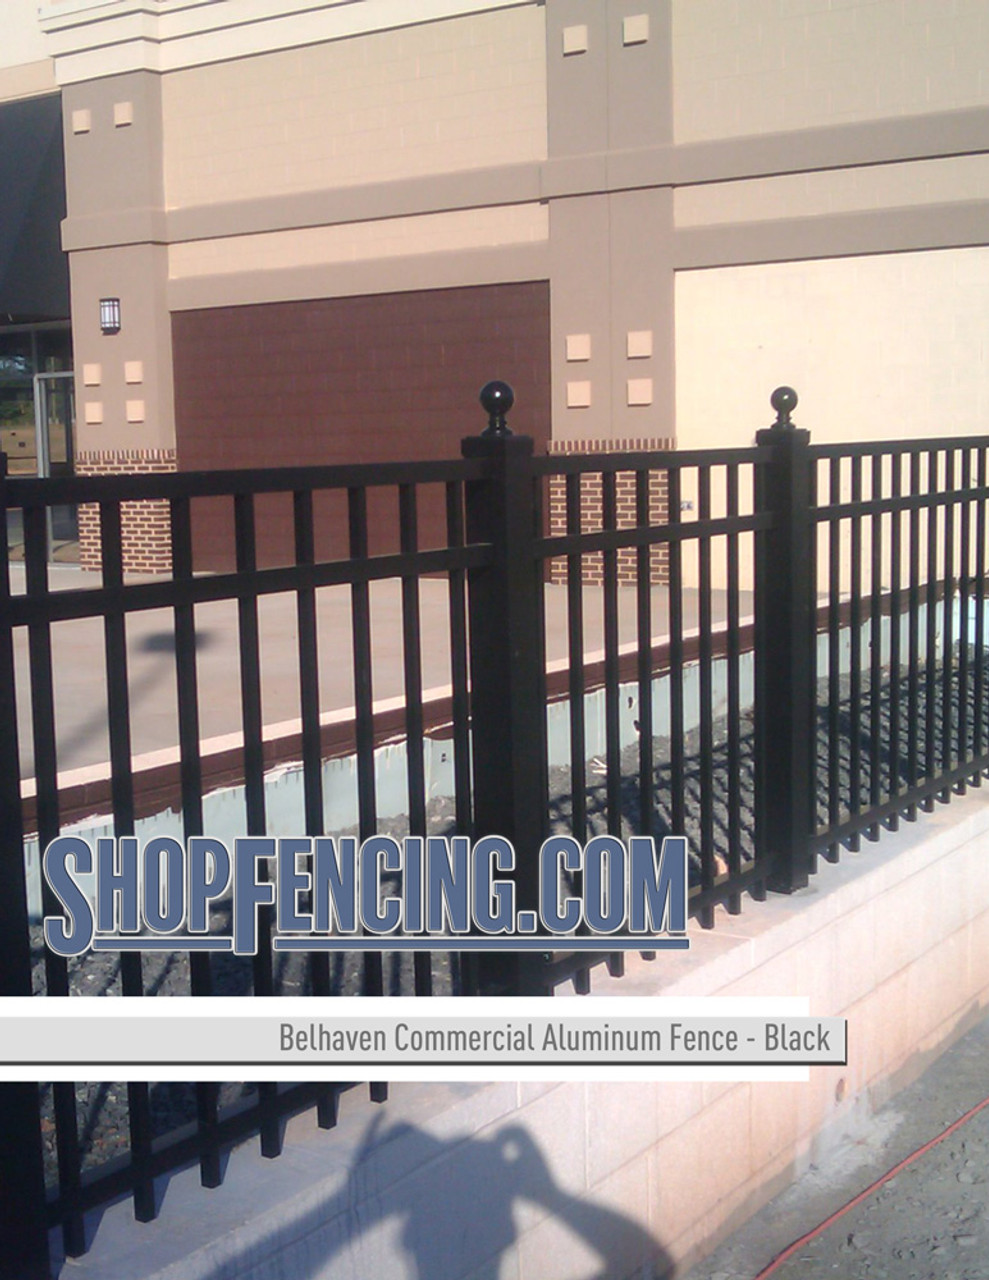 Black Commercial Belhaven Aluminum Fencing From ShopFencing.com